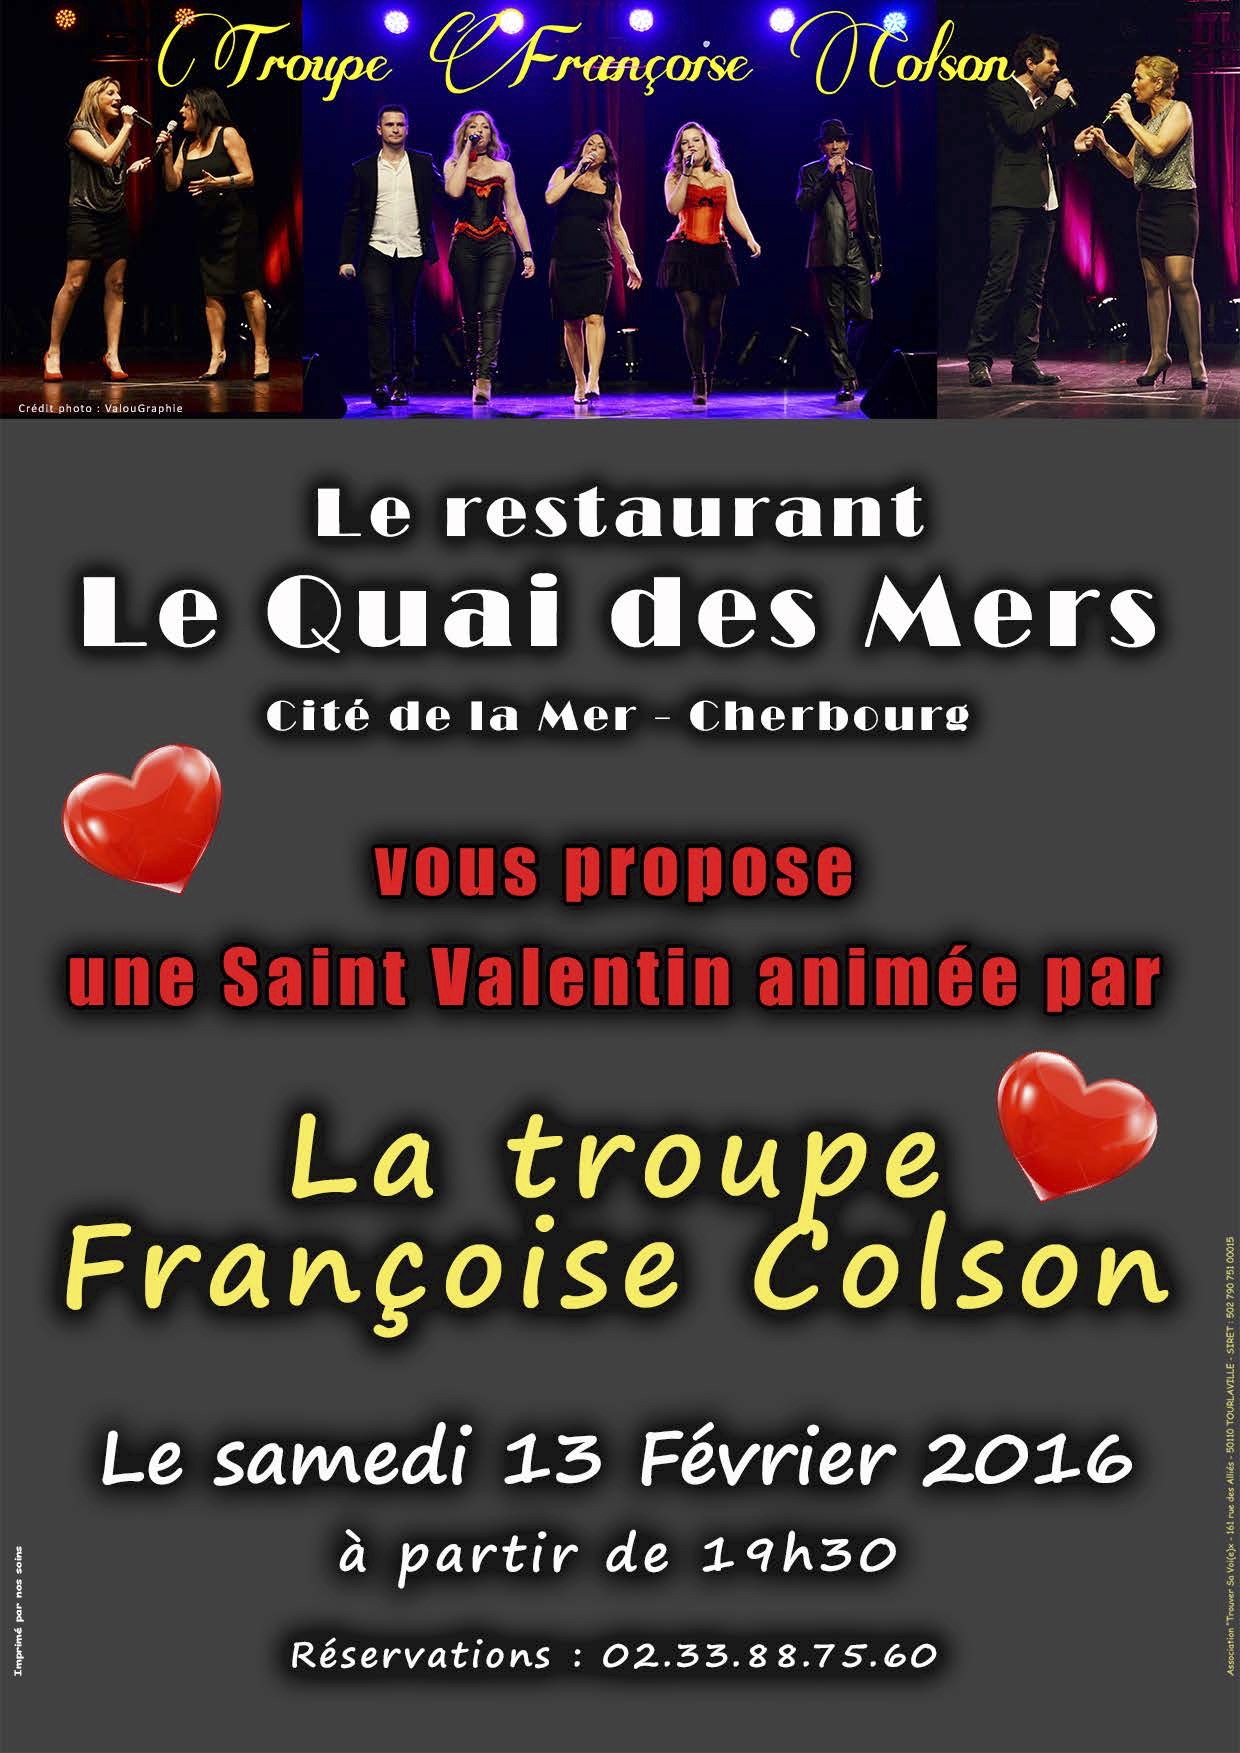 La troupe Françoise Colson fête l’amour !